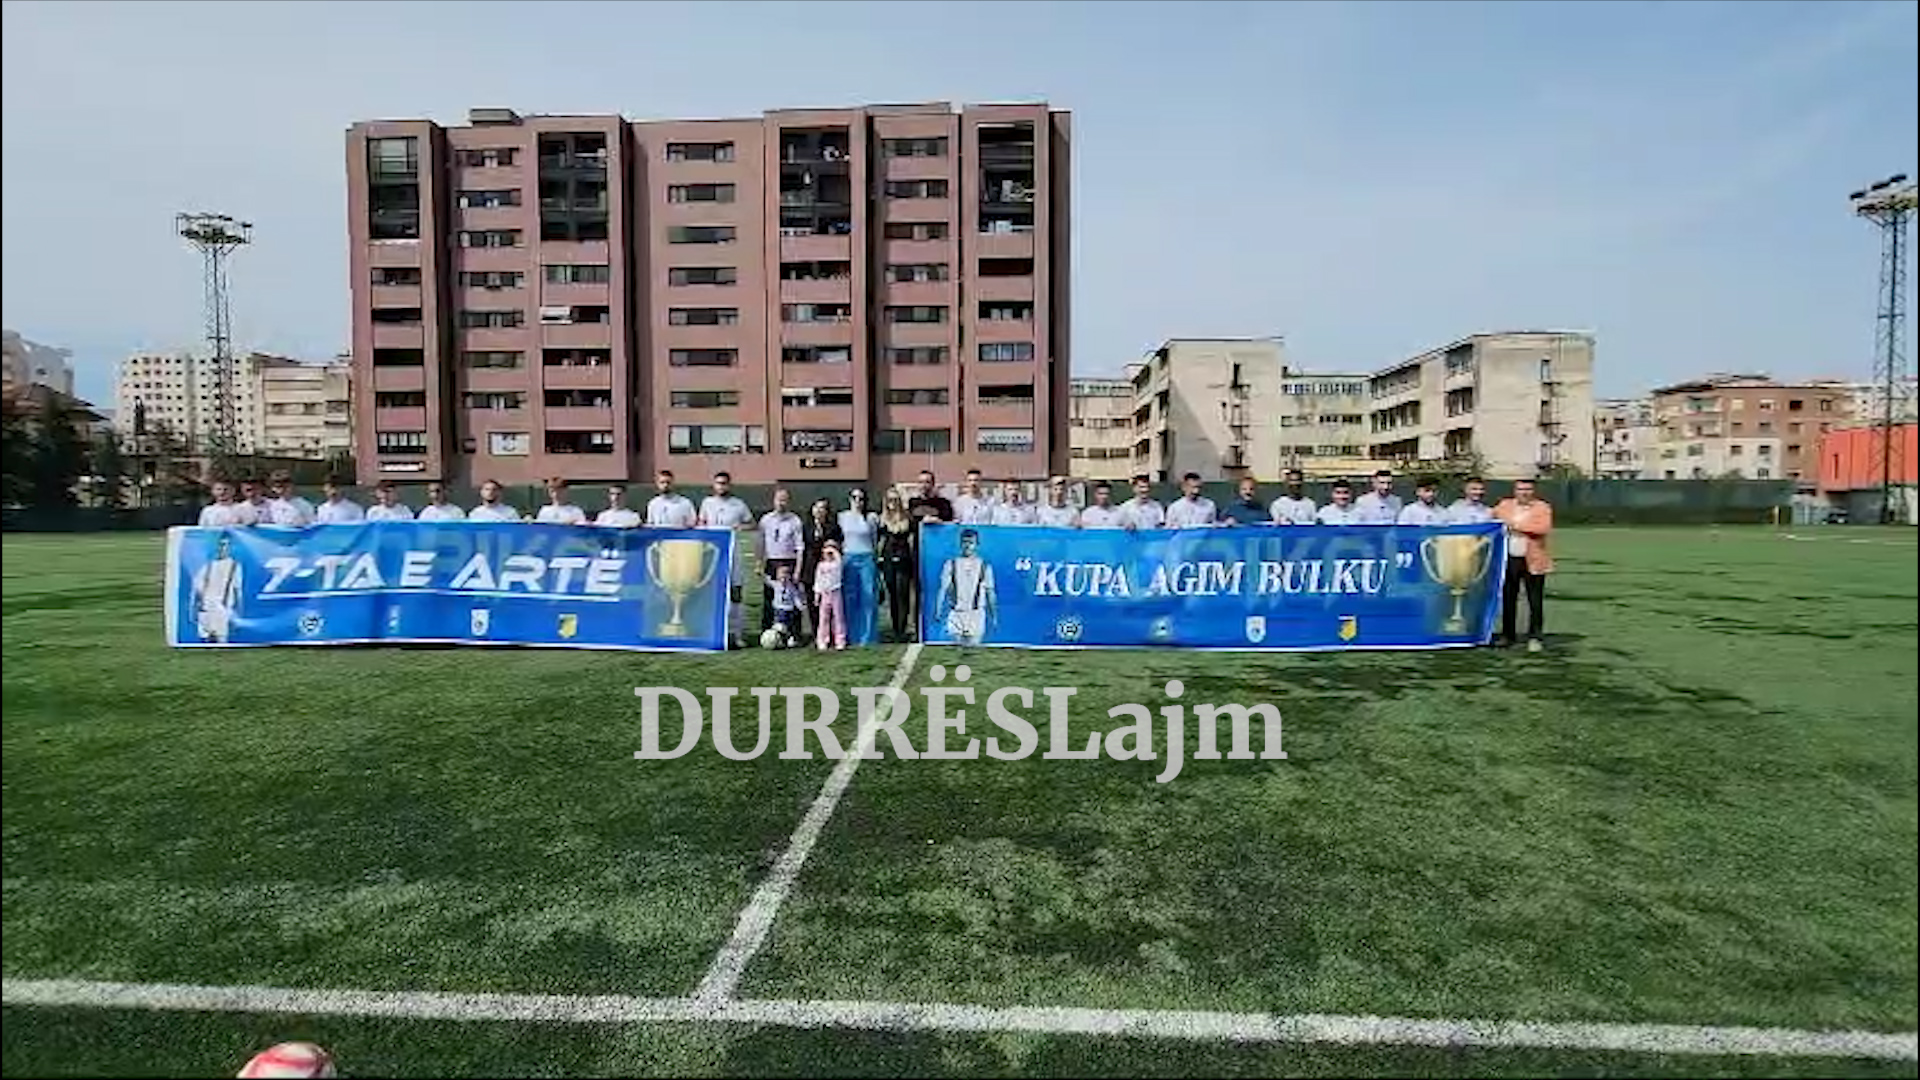 Durrës. përkujtohet ish-futbollisti i njohur Agim Bulku, sulmuesi aristokrat i fushës së blertë (VIDEO)